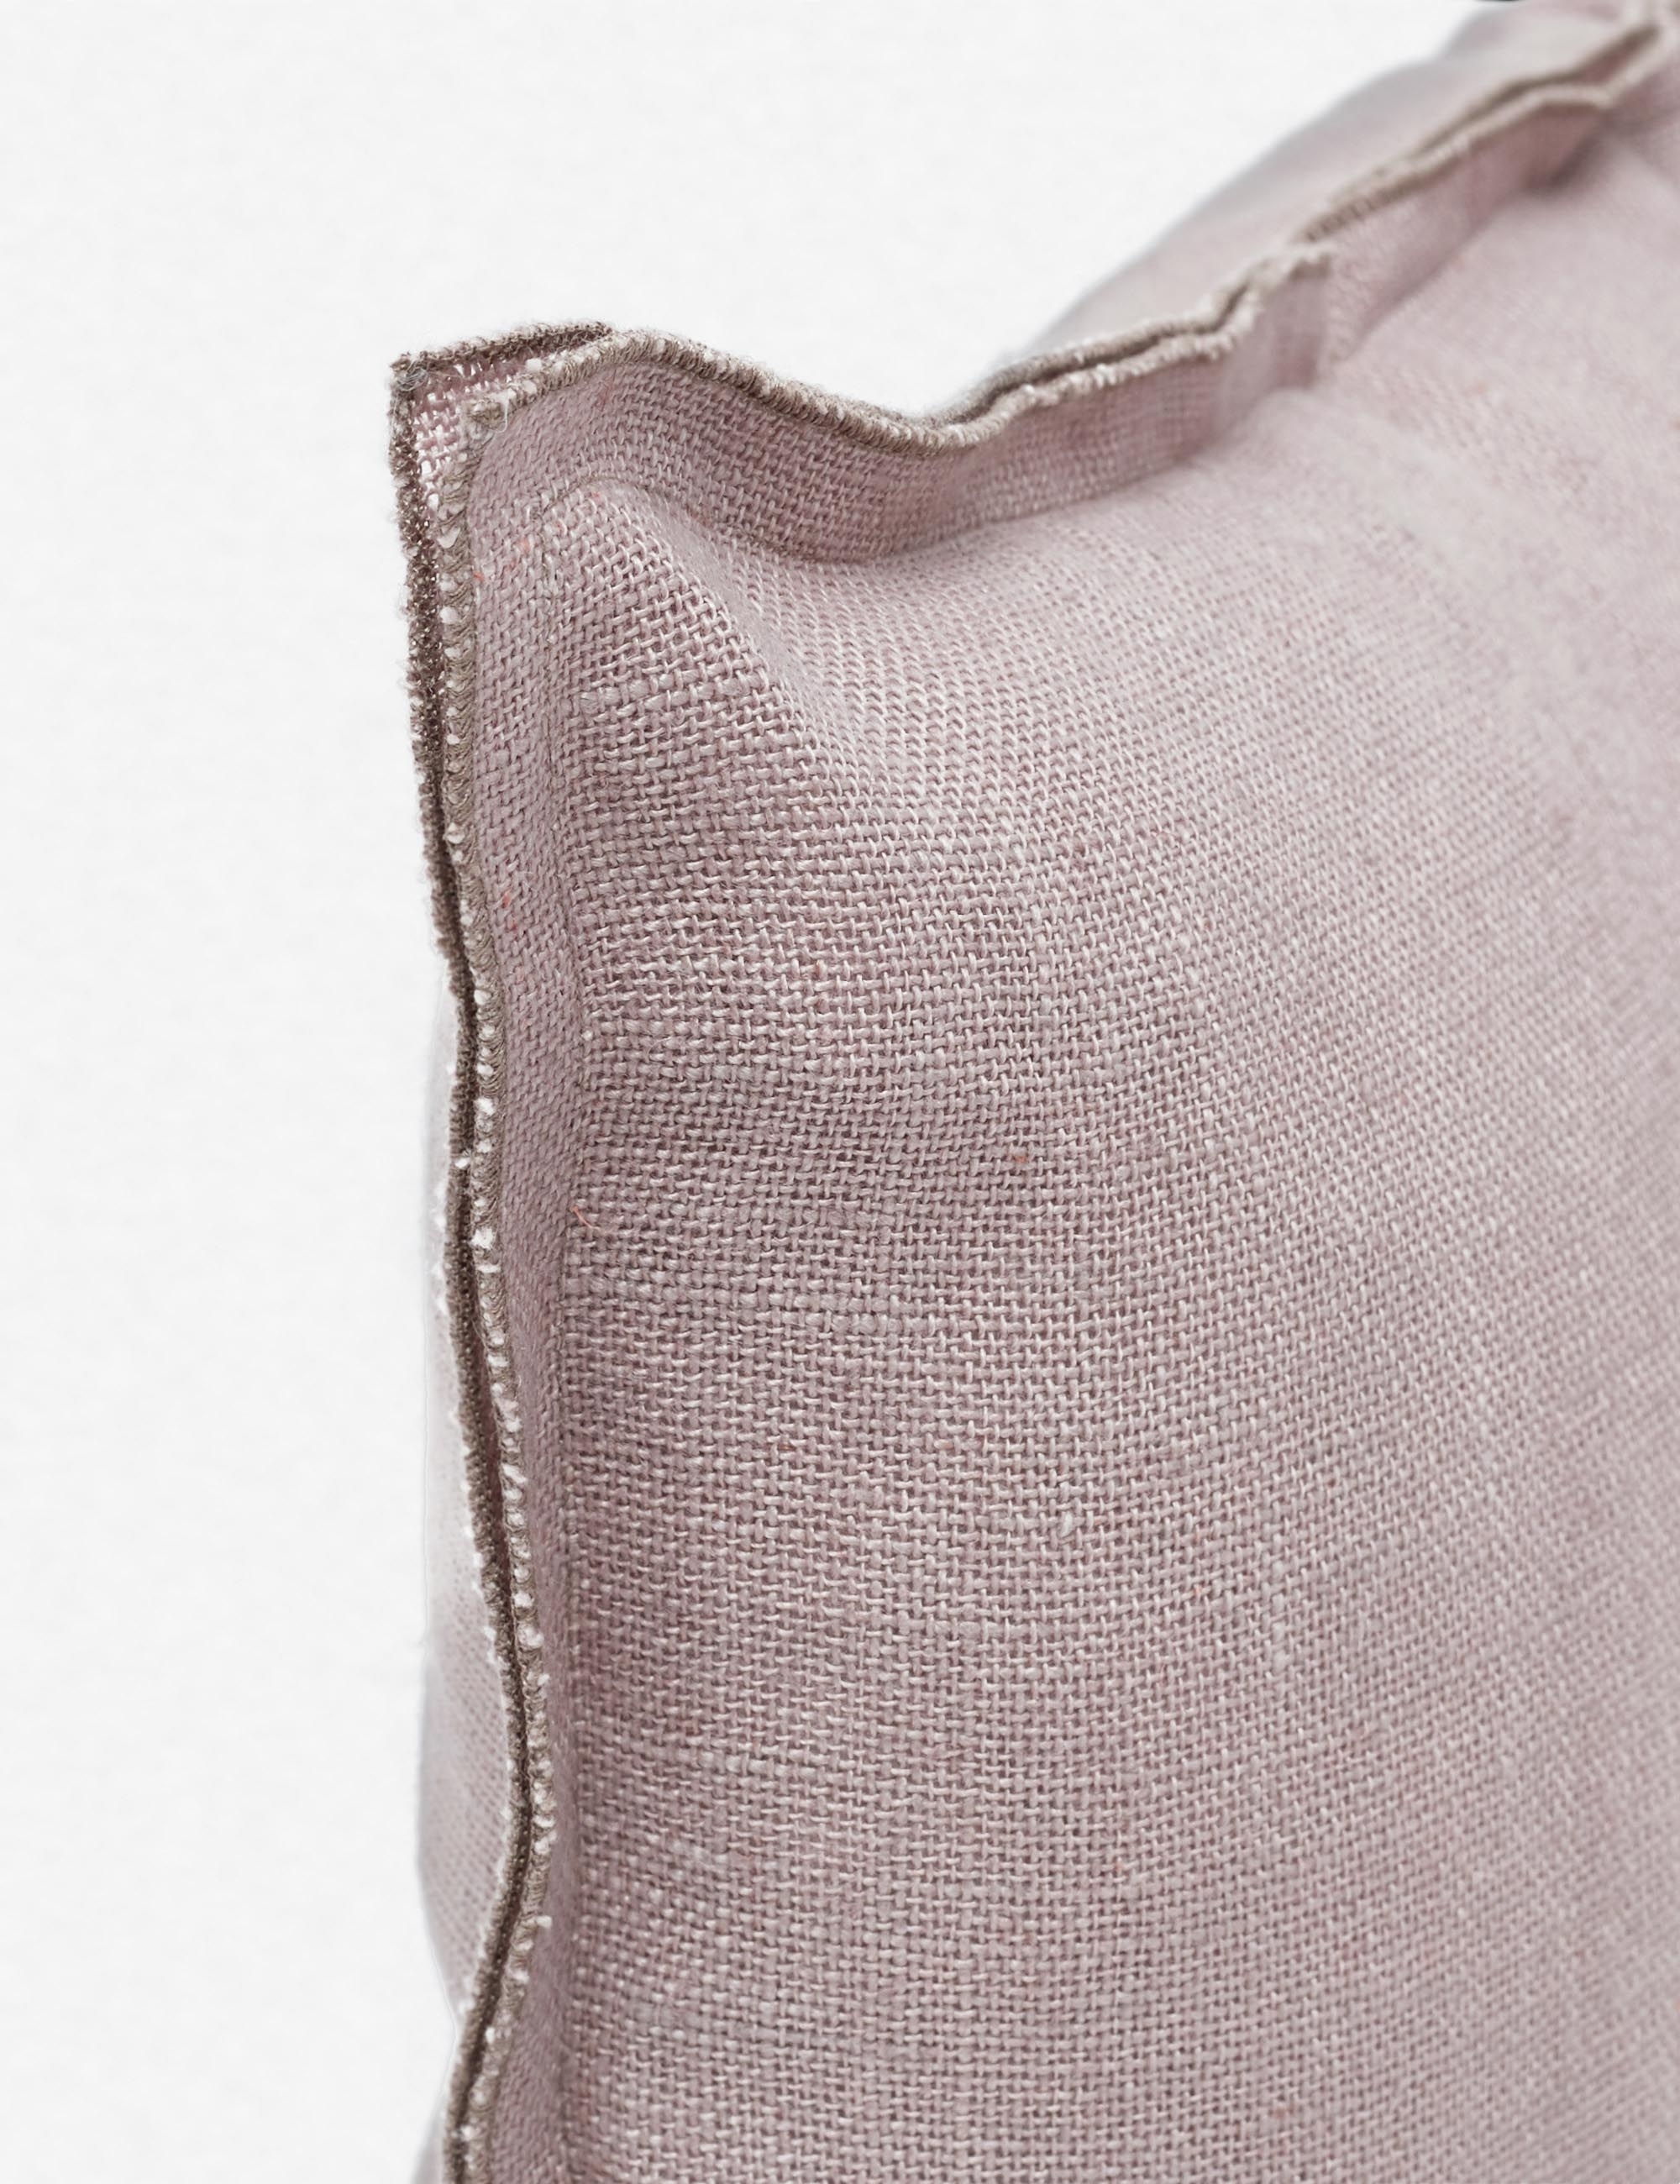 Arlo Linen Long Lumbar Pillow, Dark Natural - Image 1